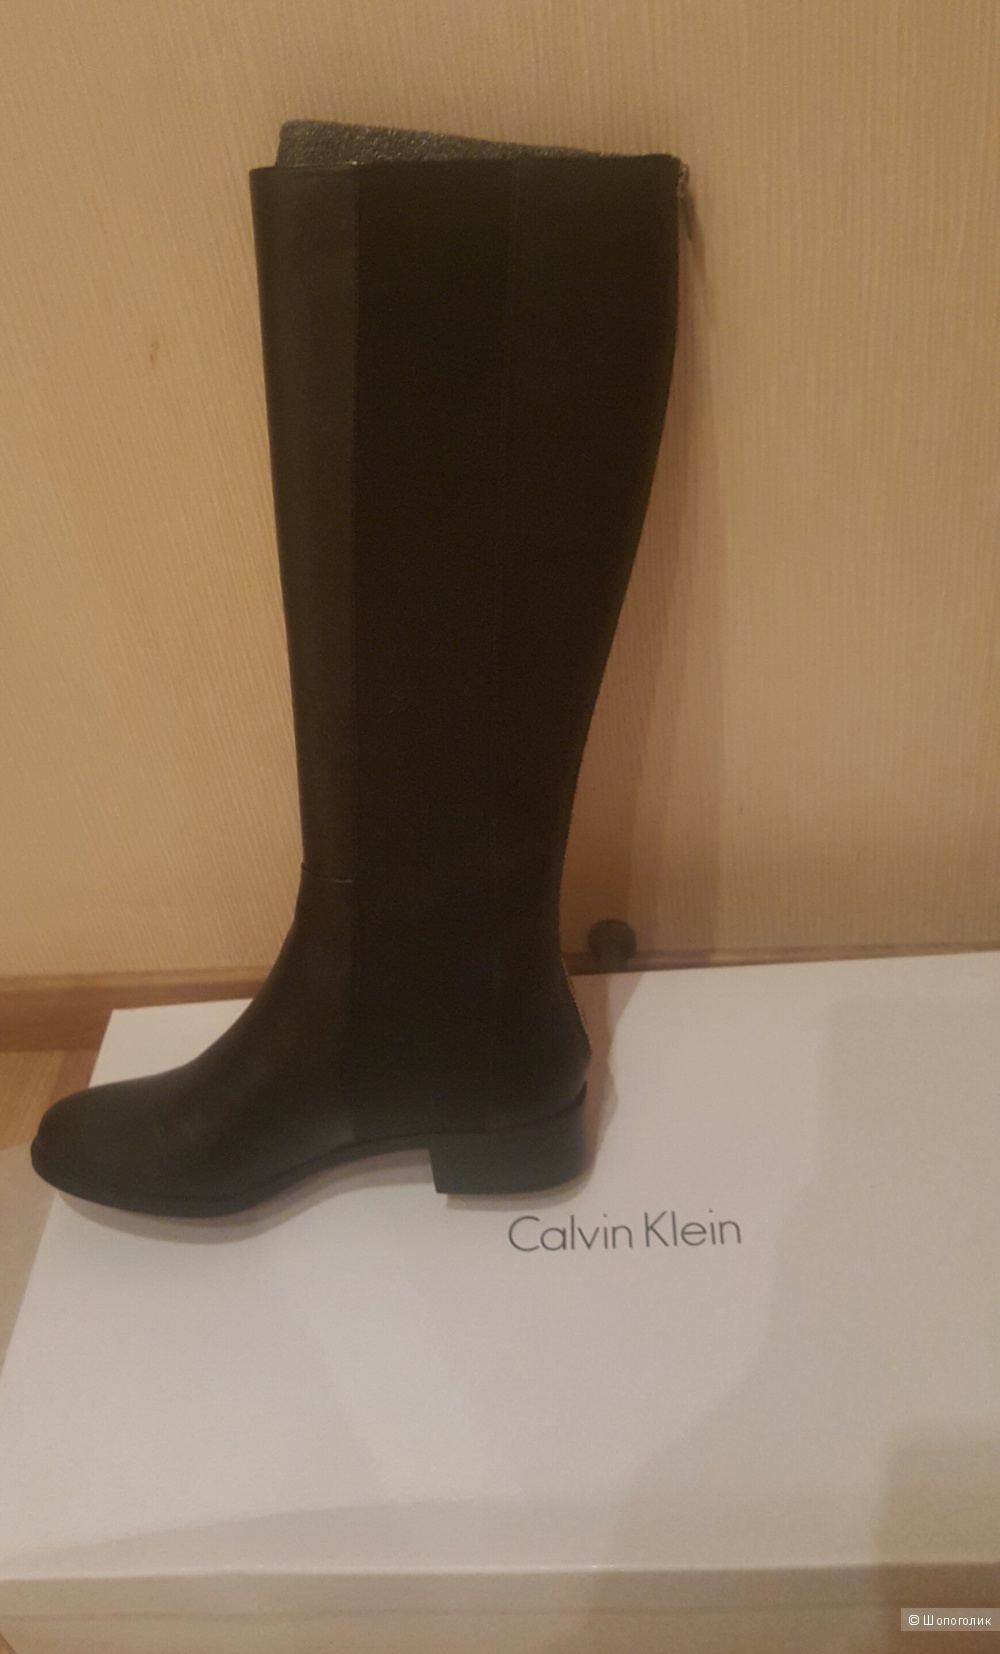 Новые кожанные сапожки Calvin Klein. Размер ru4 0. US 9.5